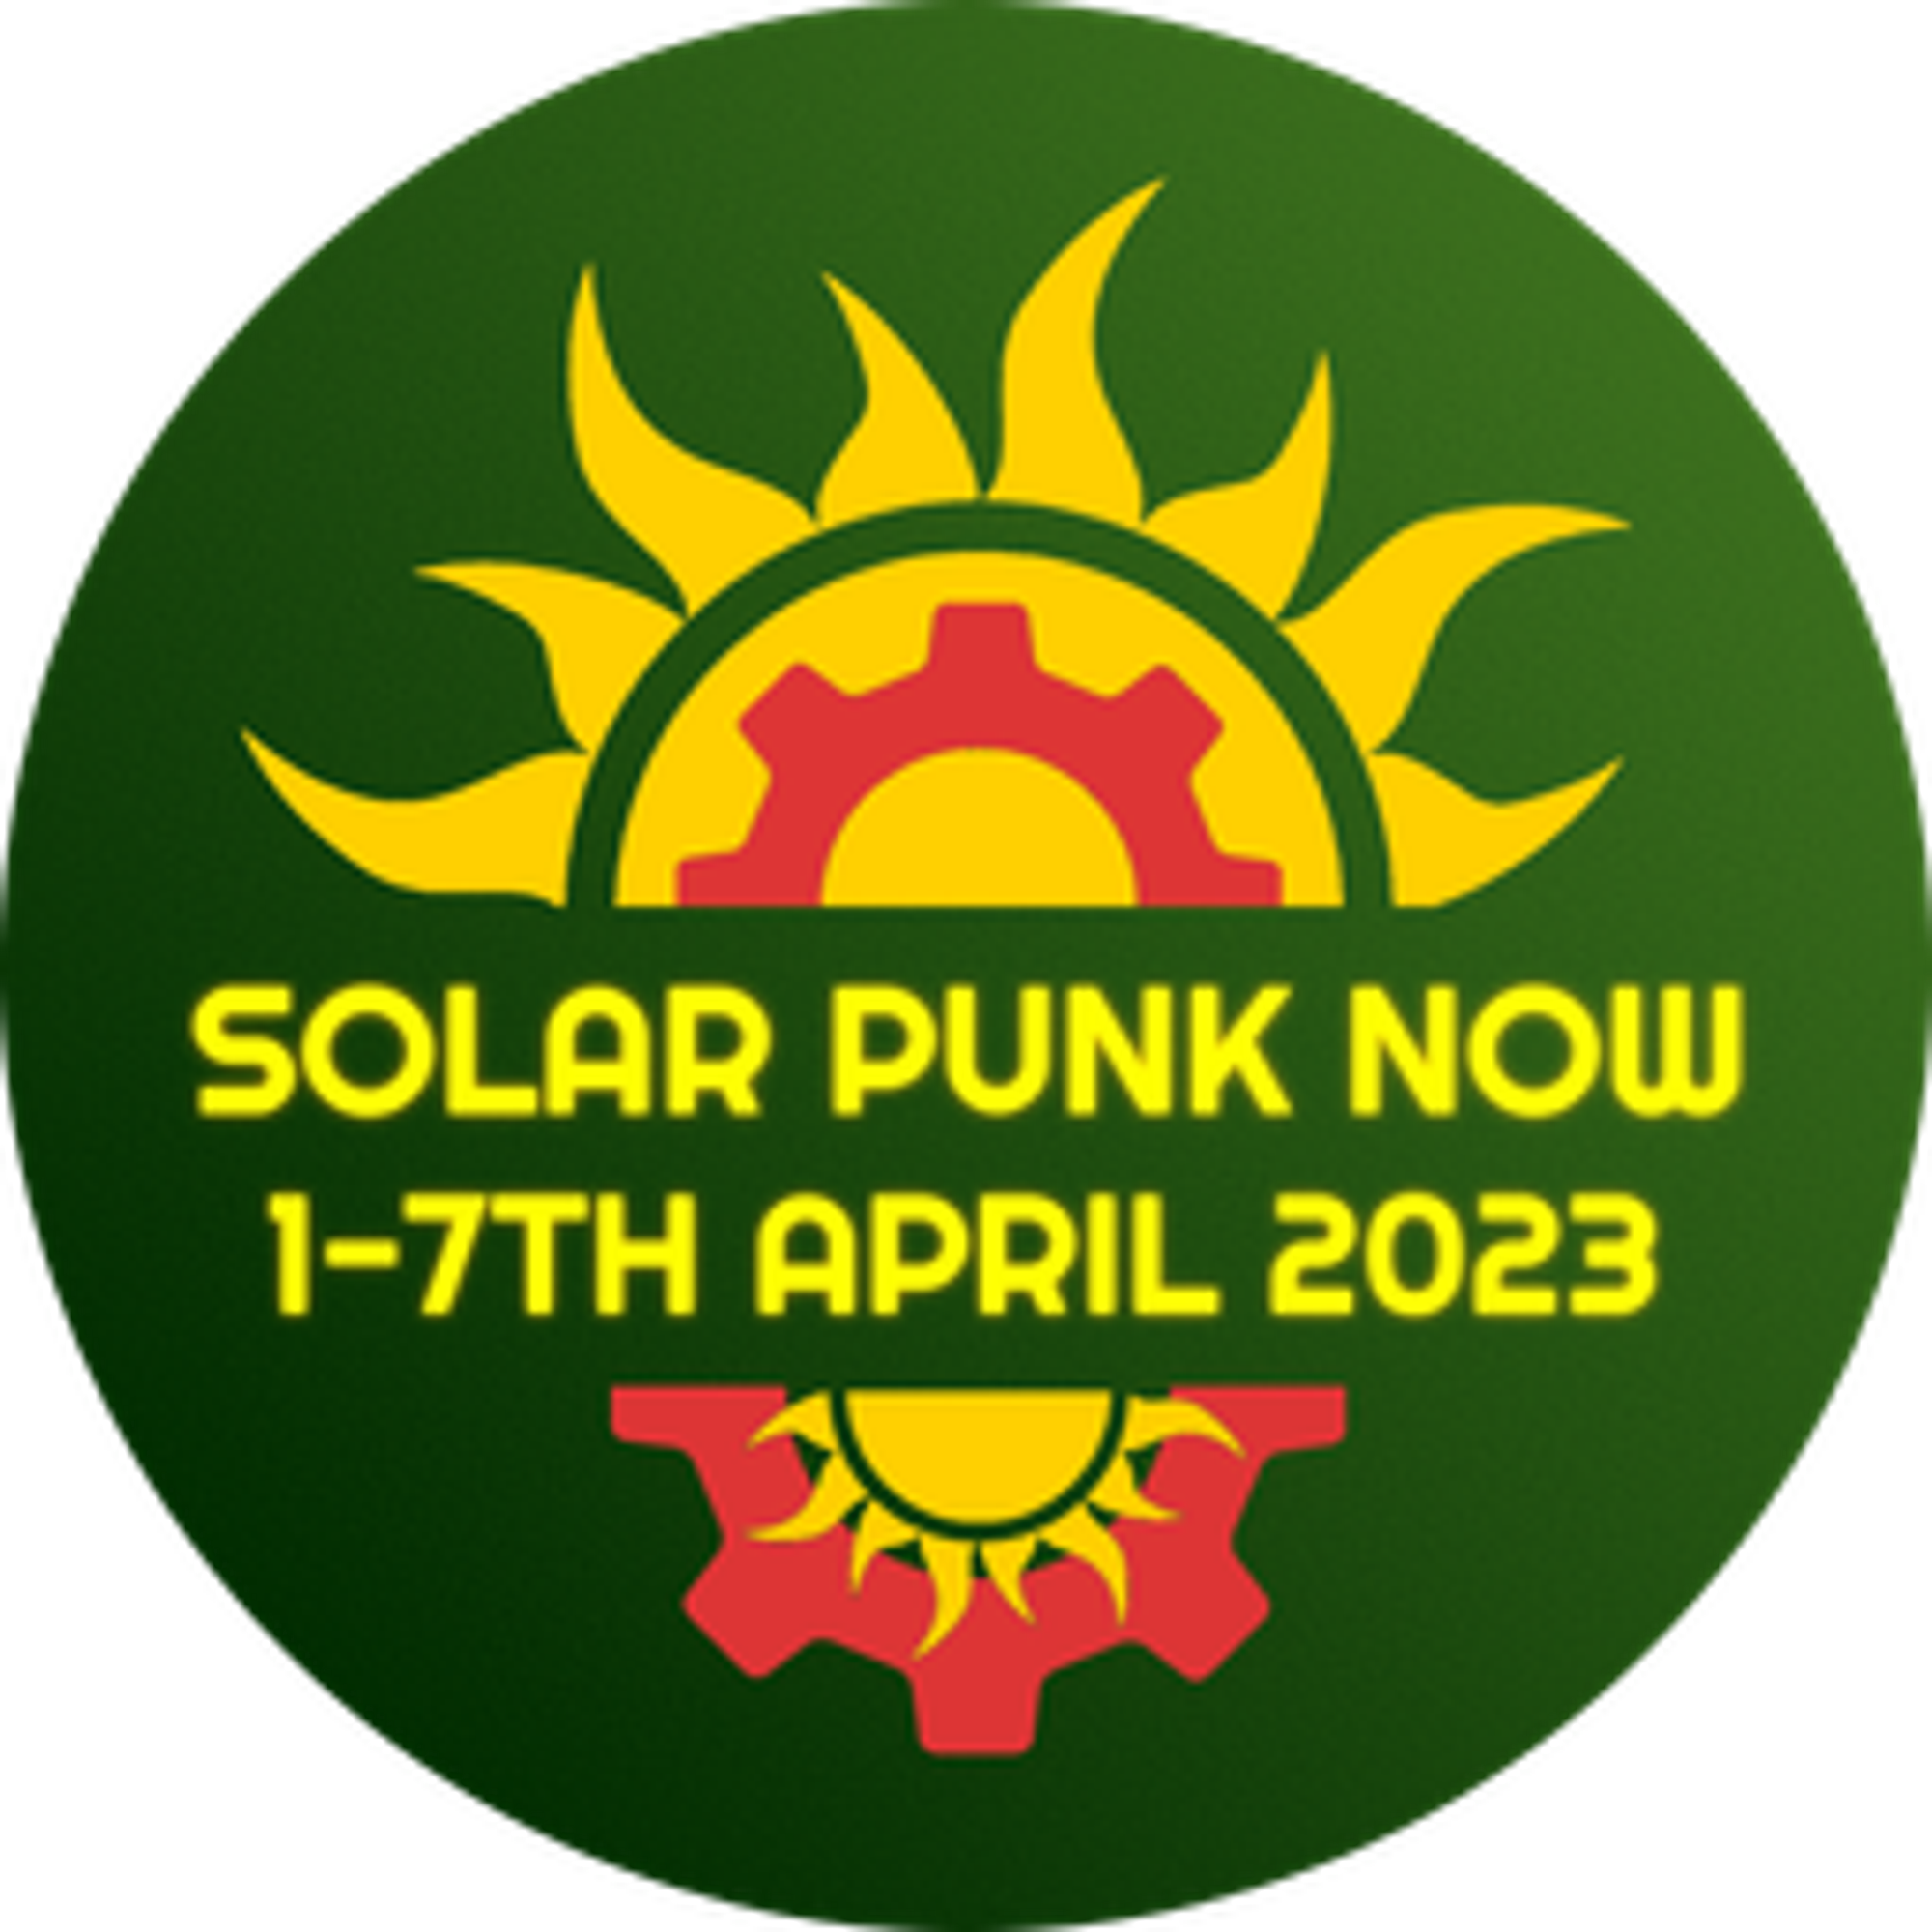 Solarpunk NOW! - Open Collective